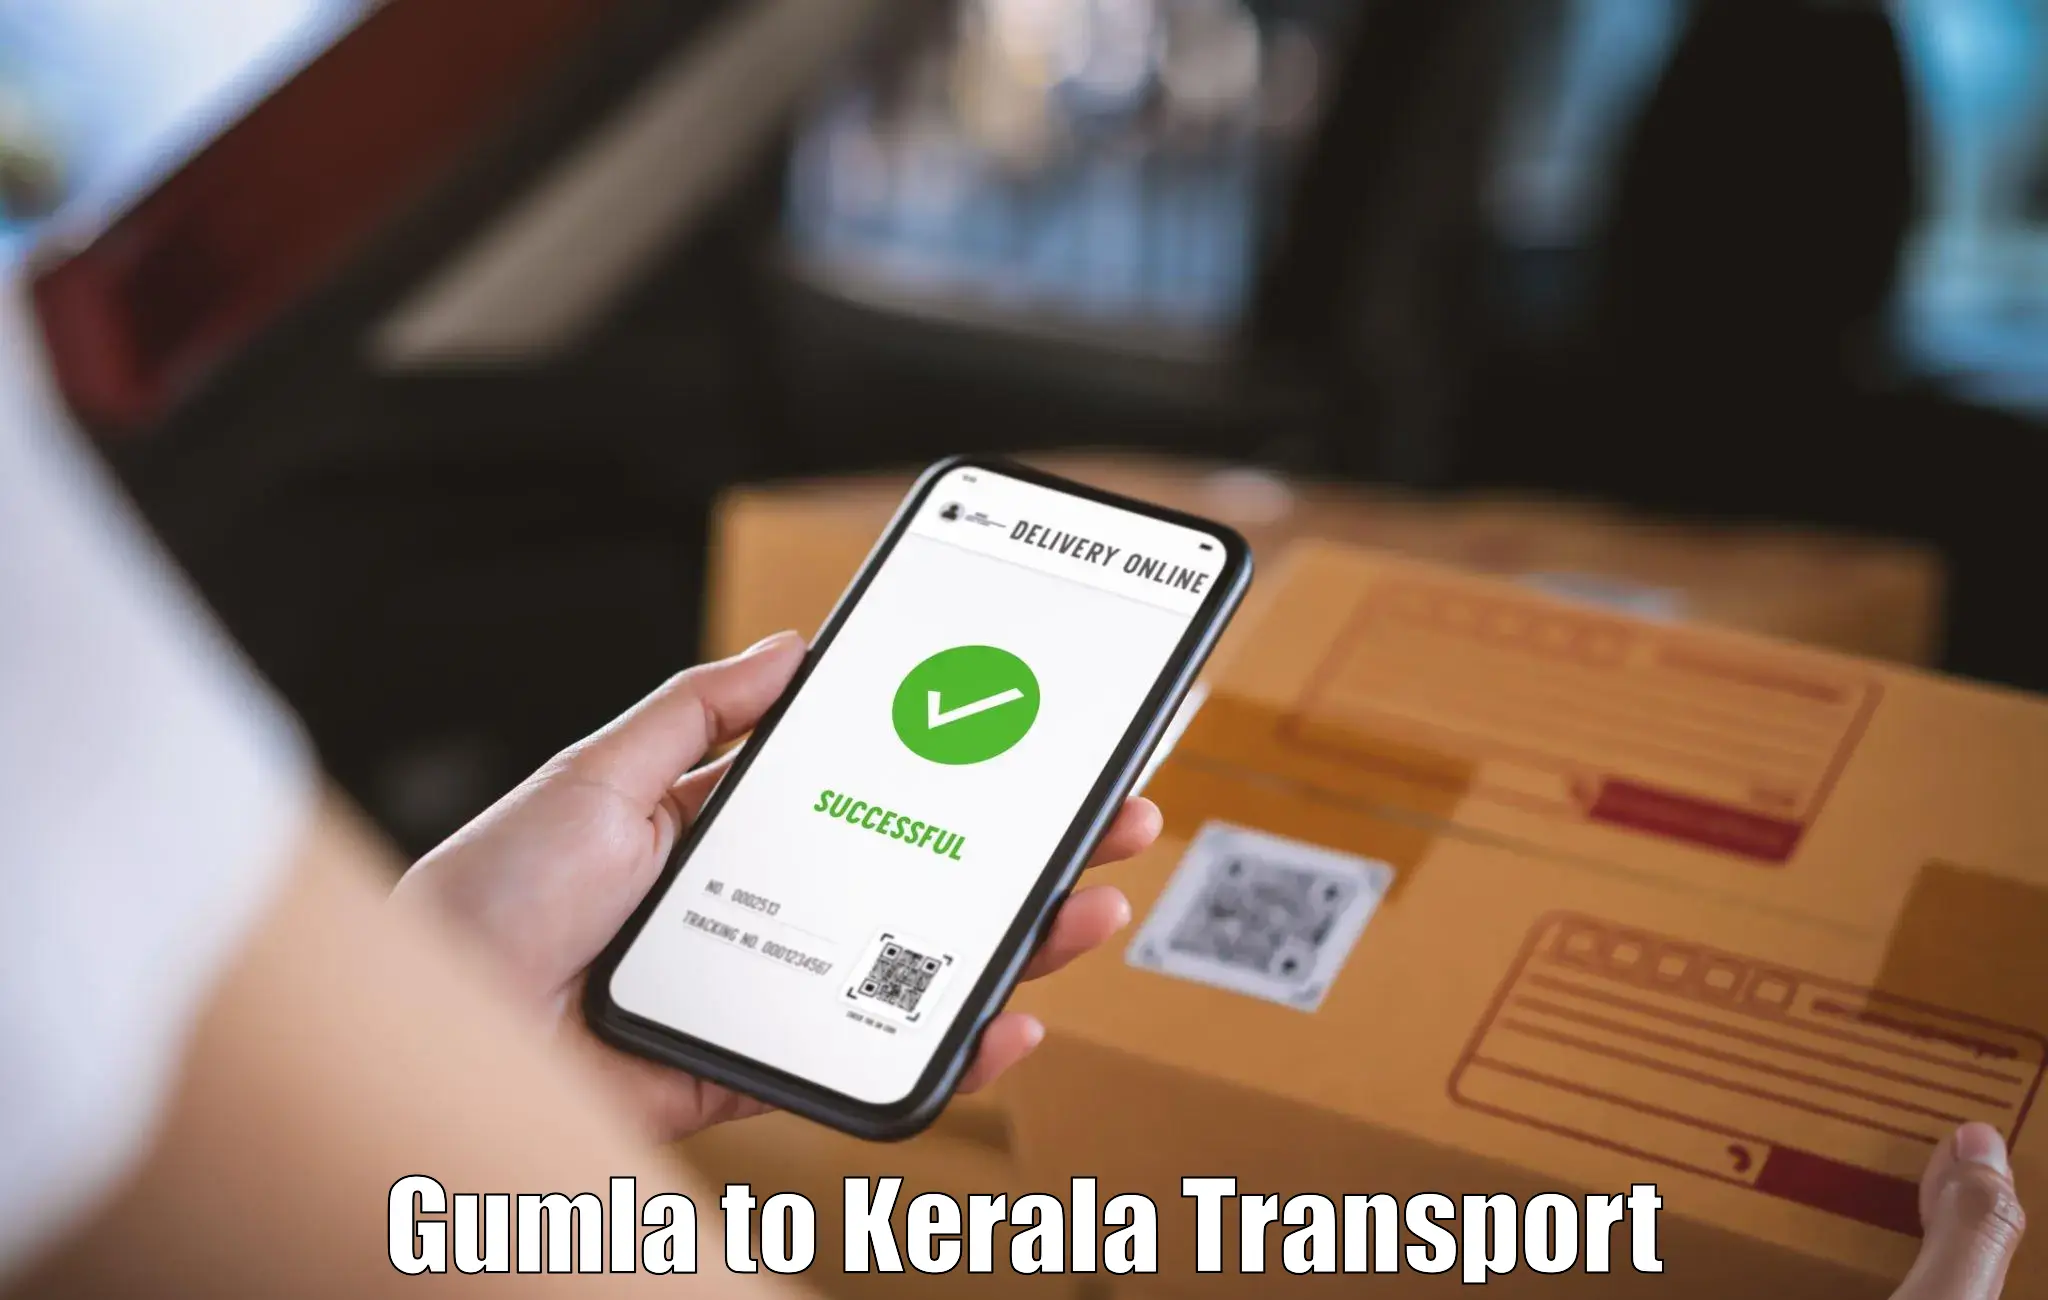 Online transport service in Gumla to Ottapalam